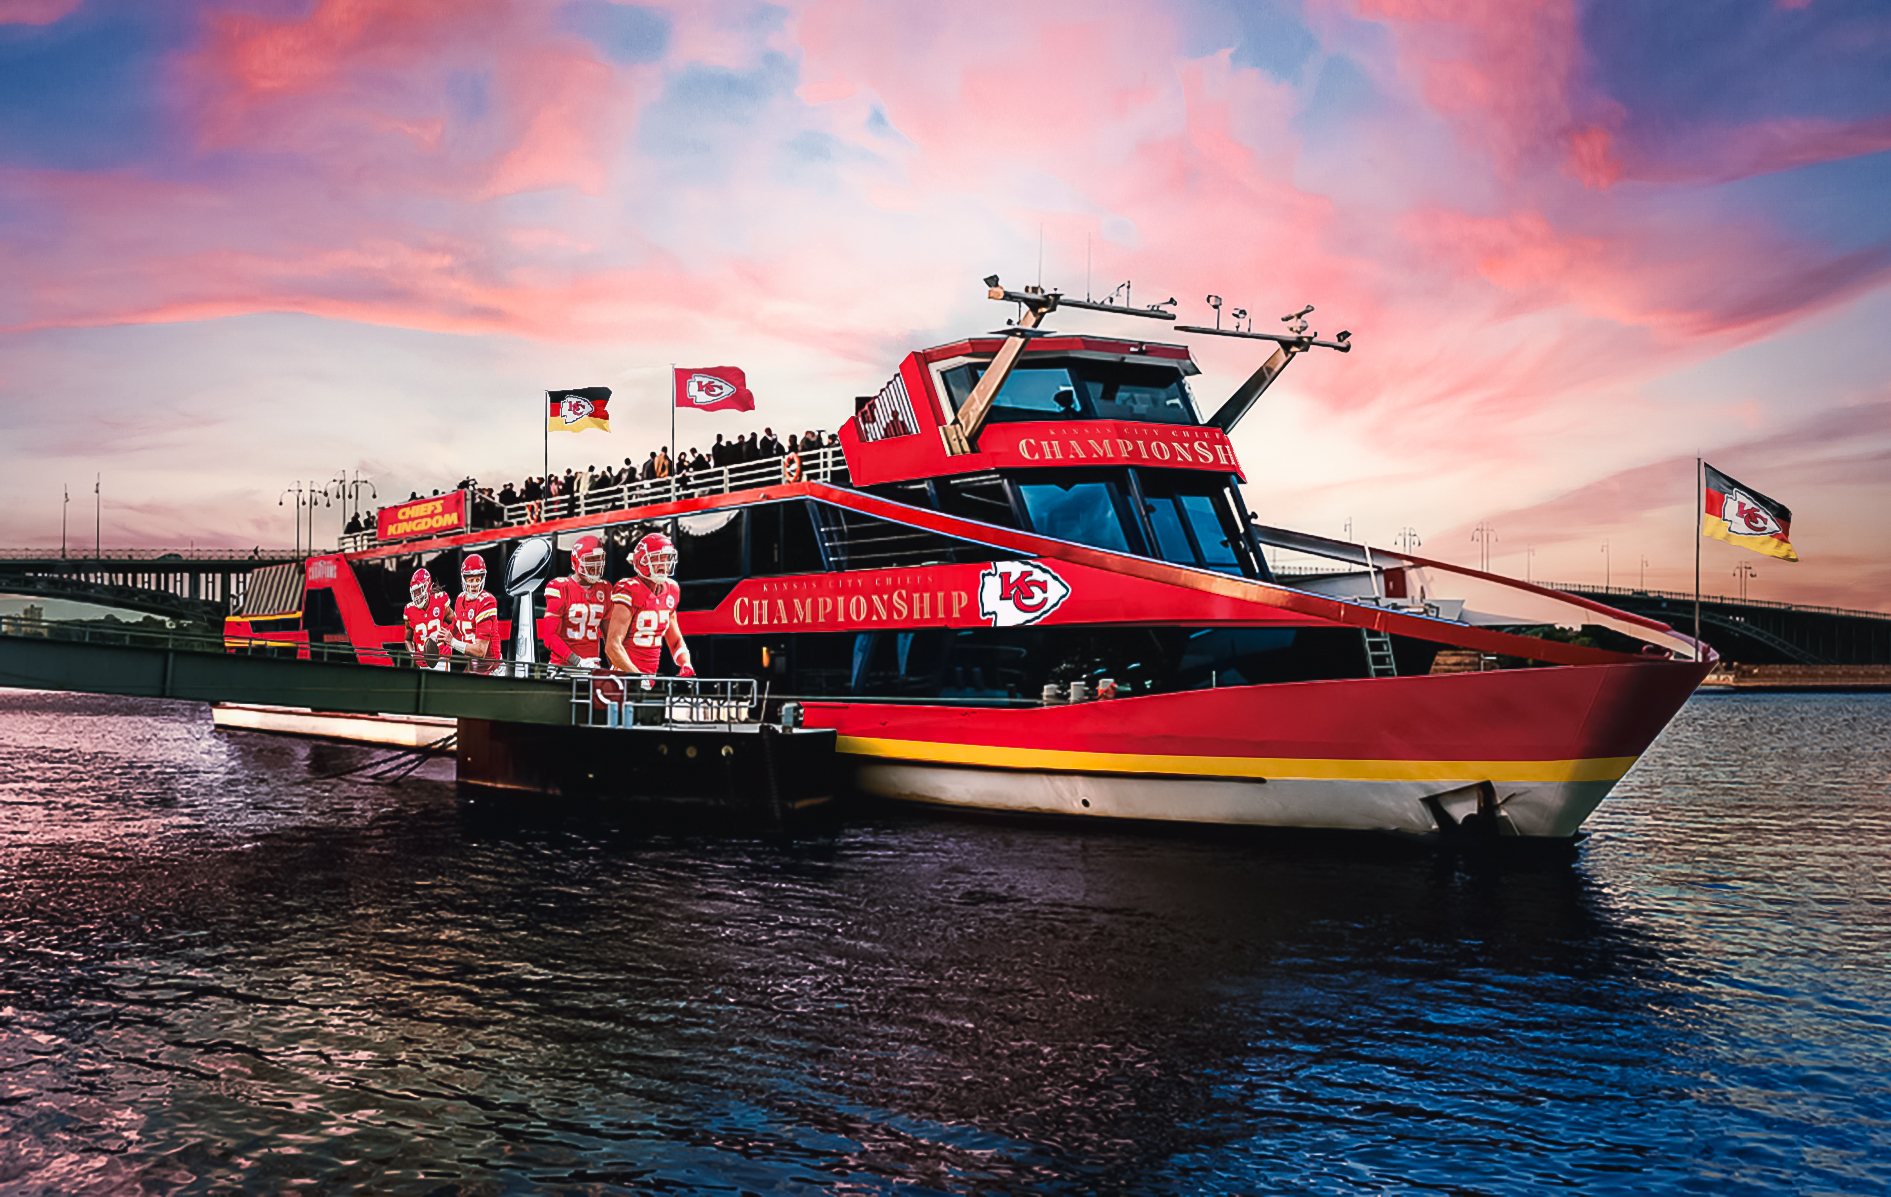 FootballR - NFL Chiefs Frankfurt - Ein rotes Boot auf dem Wasser.